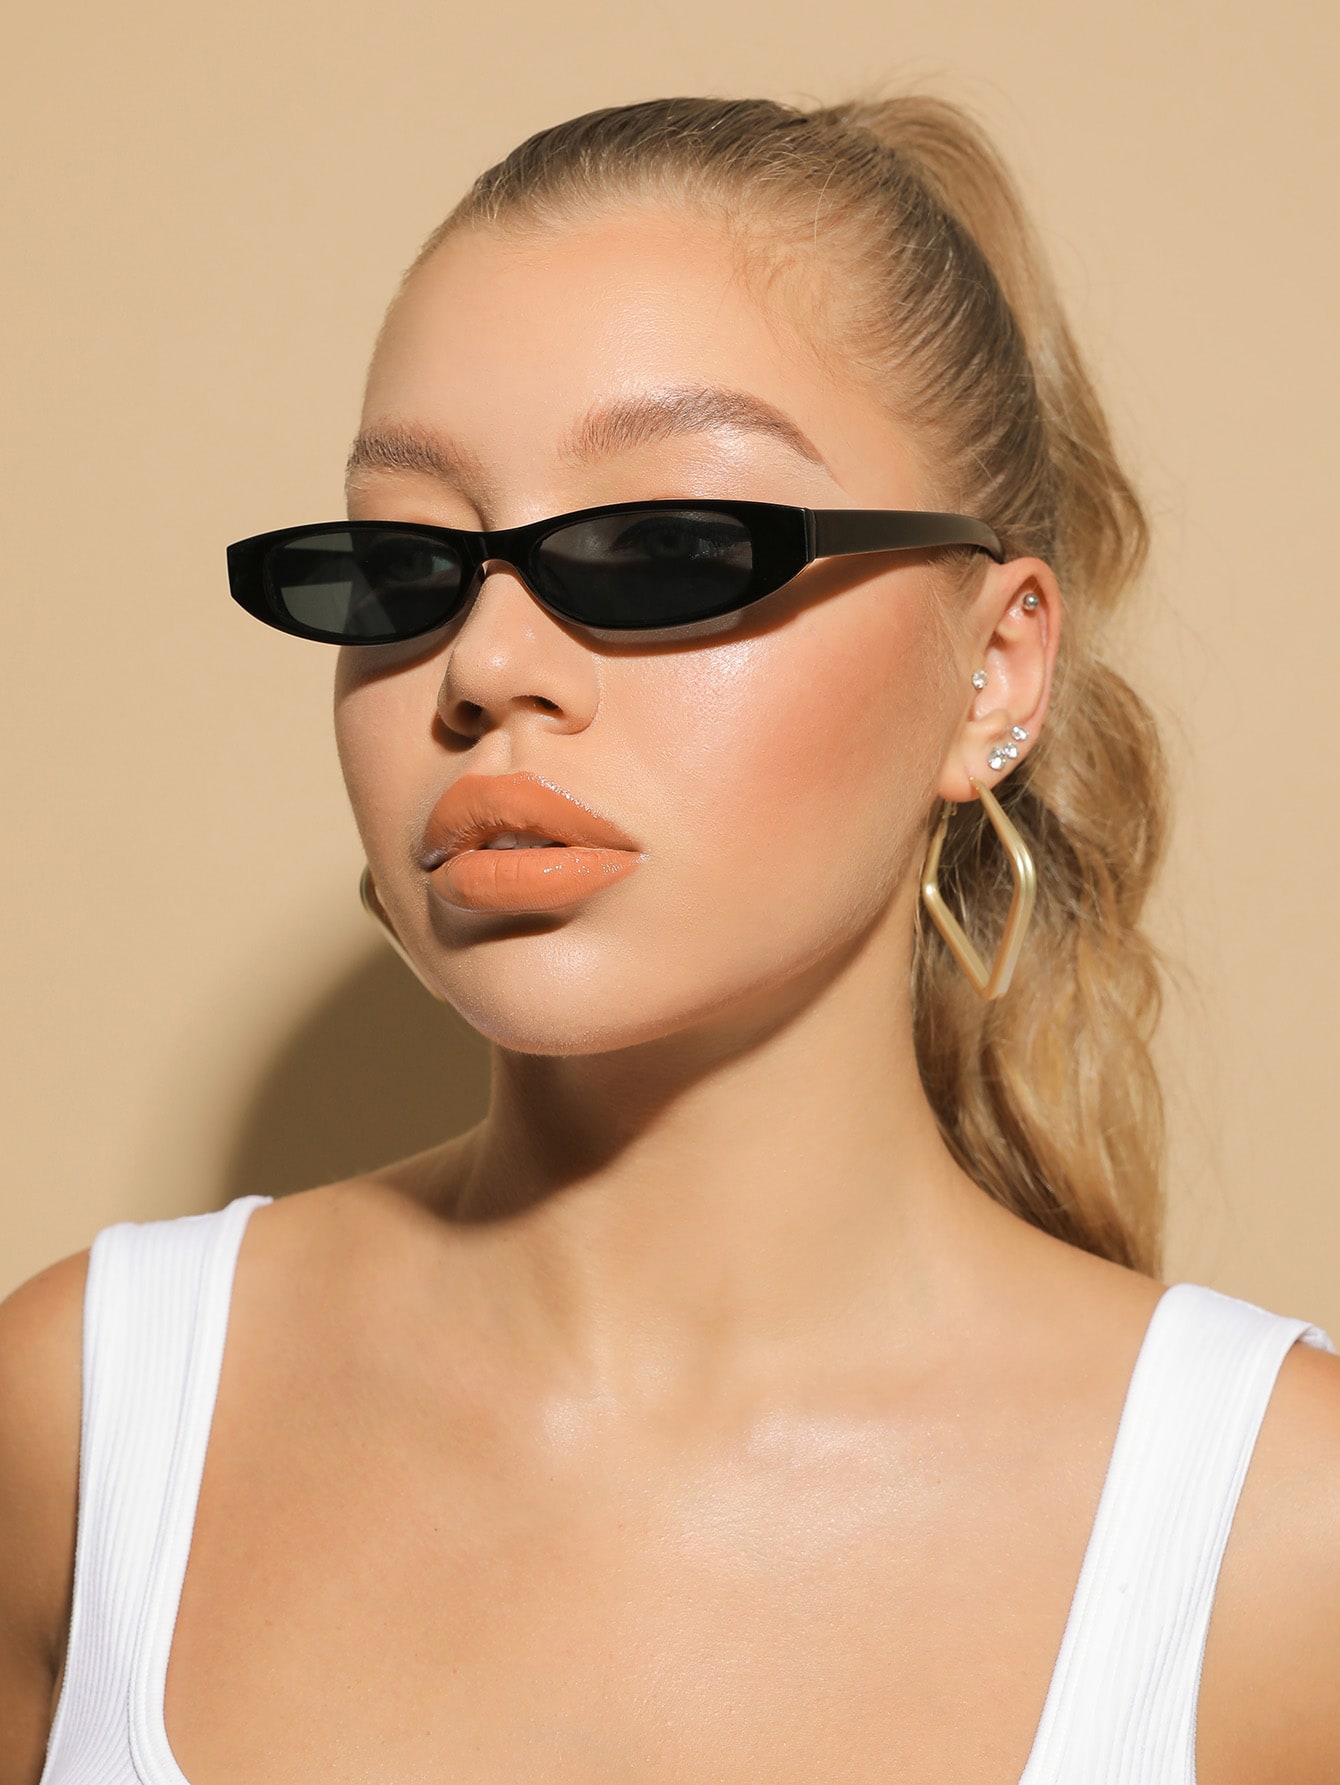 Модные солнцезащитные очки в акриловой оправе для модного винтажного образа в стиле стимпанк